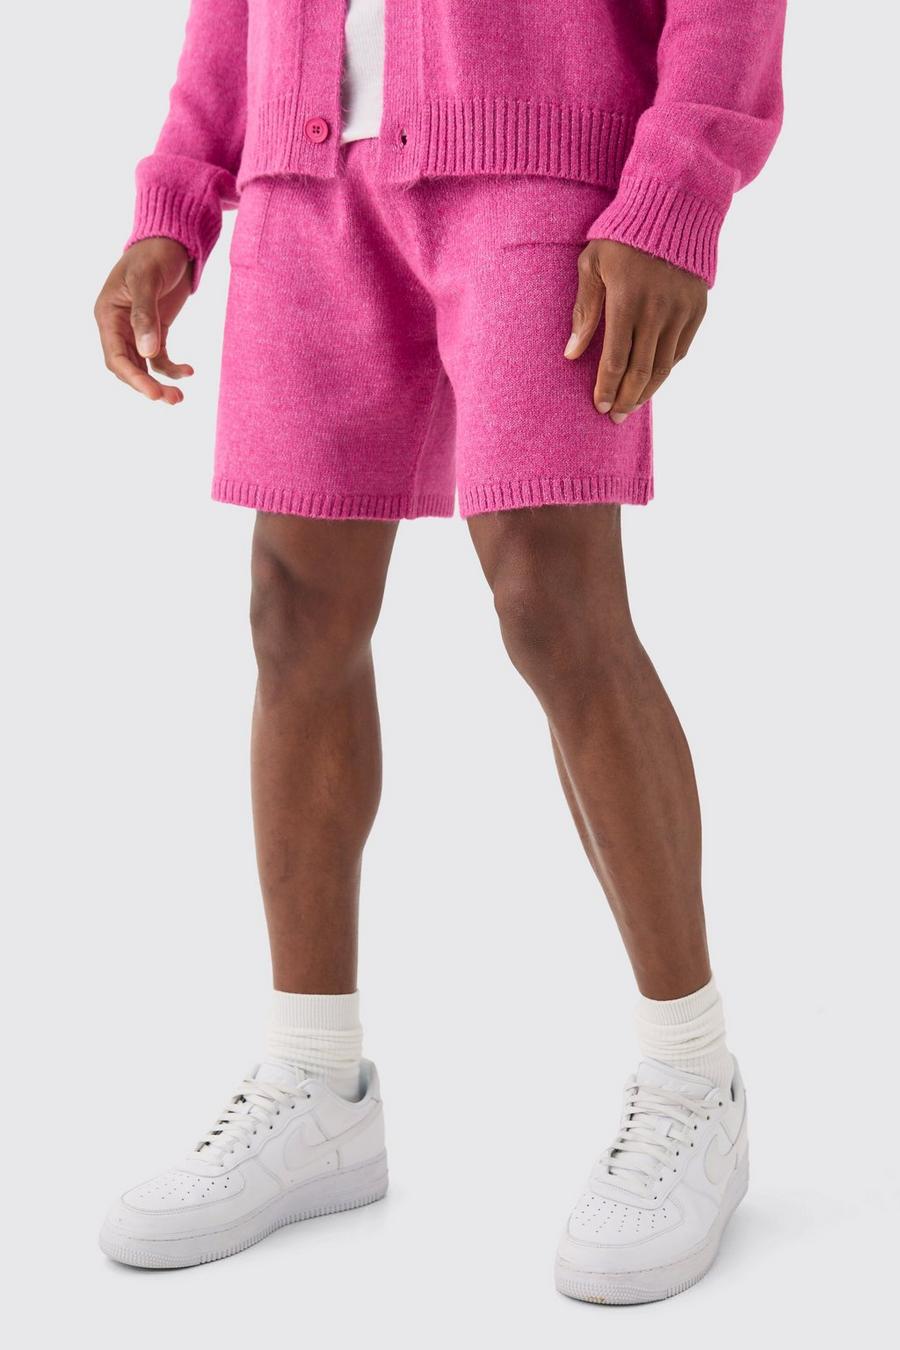 Lockere Strick-Shorts in Pink, Dark pink